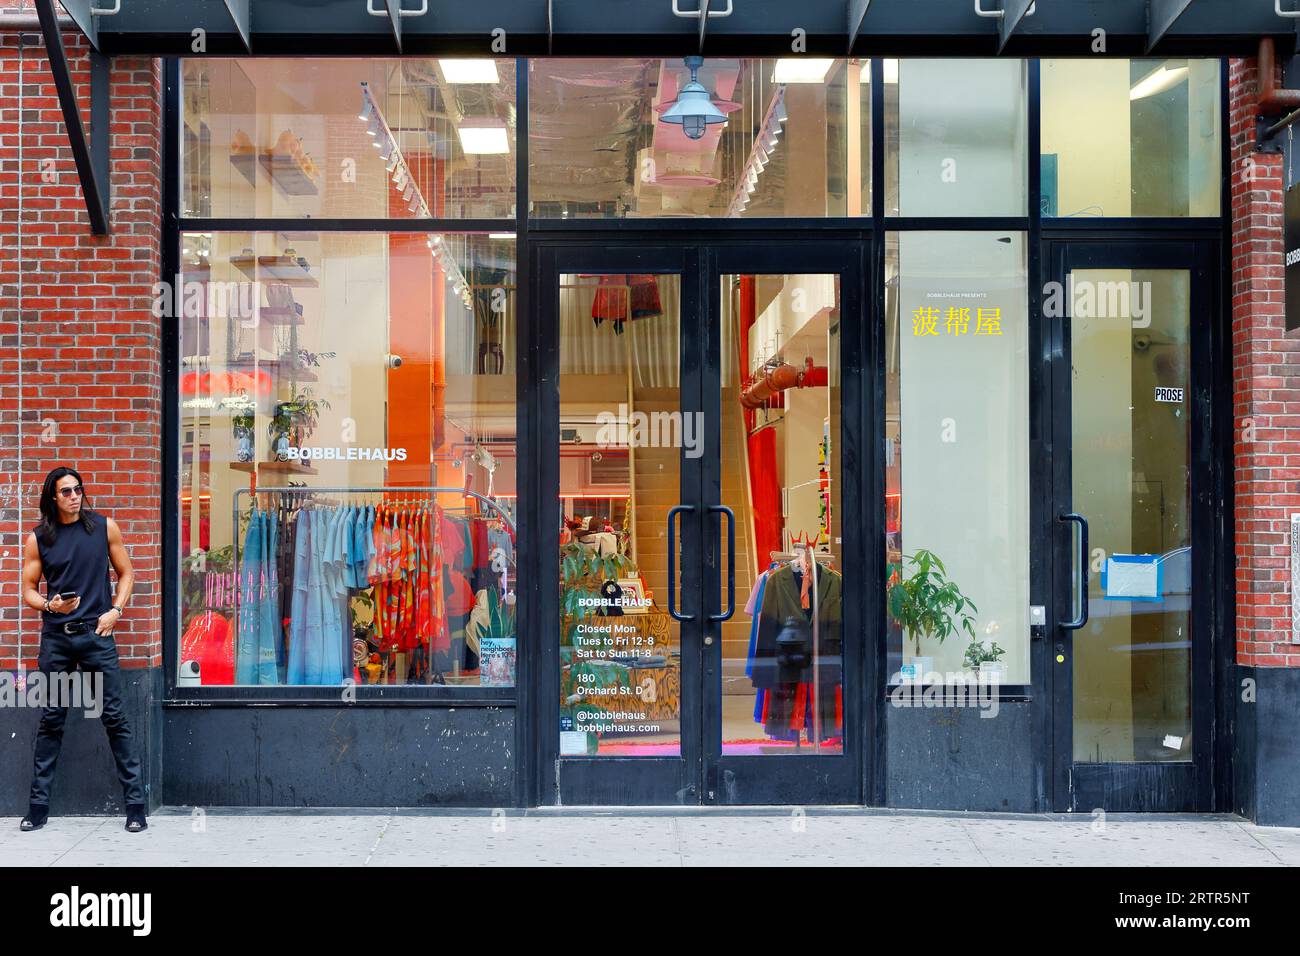 Bobblehaus 菠帮屋, 180 Orchard St, New York. Foto del negozio di New York di una boutique di moda rigenerante e senza genere nel Lower East Side di Manhattan. Foto Stock